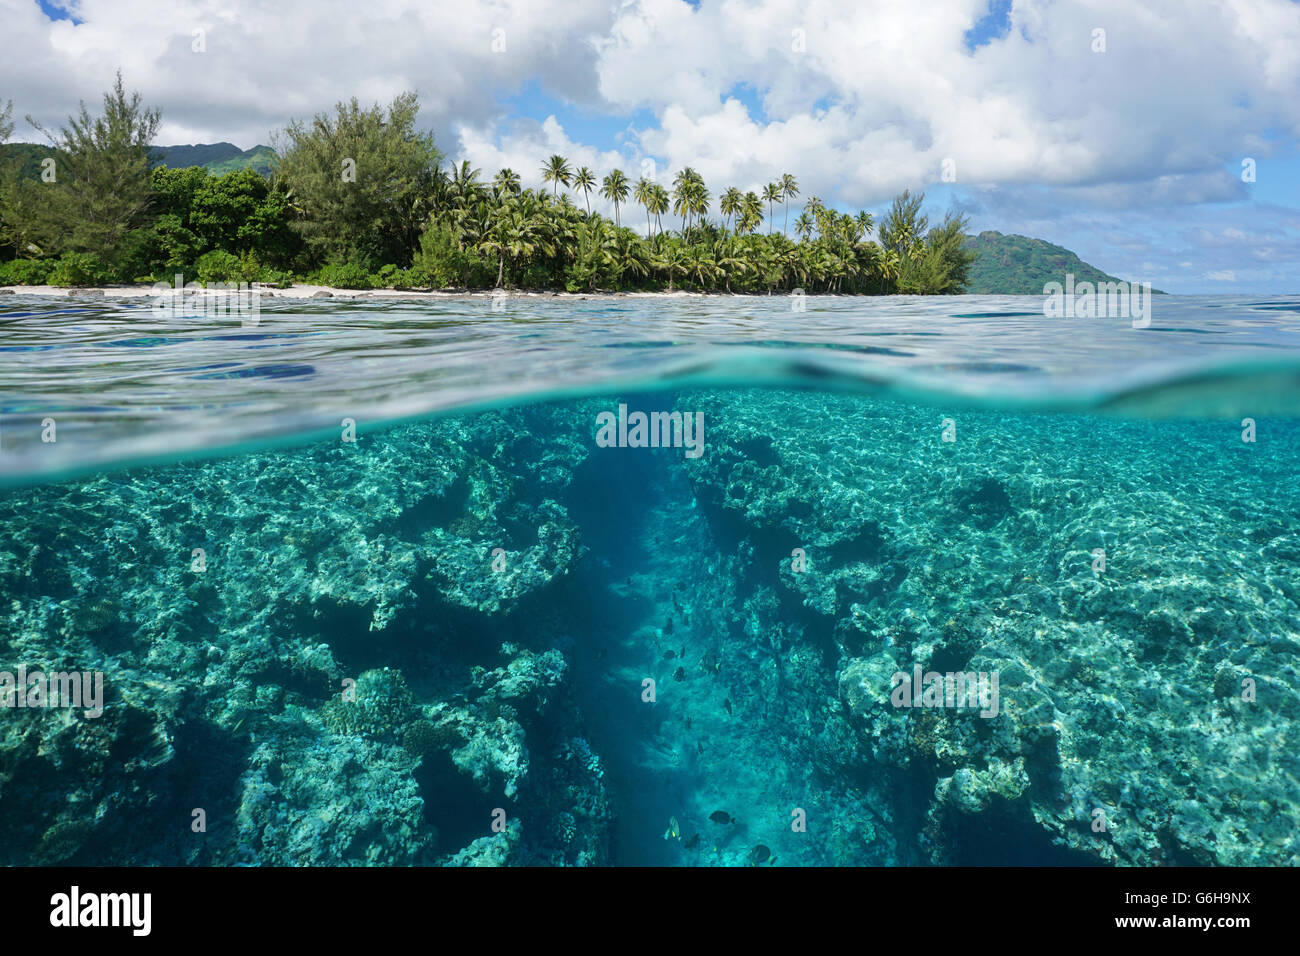 Il paesaggio al di sopra e al di sotto della superficie dell'acqua, isola tropicale shore con trincea naturale nella barriera corallina, oceano pacifico, Polinesia Francese Foto Stock